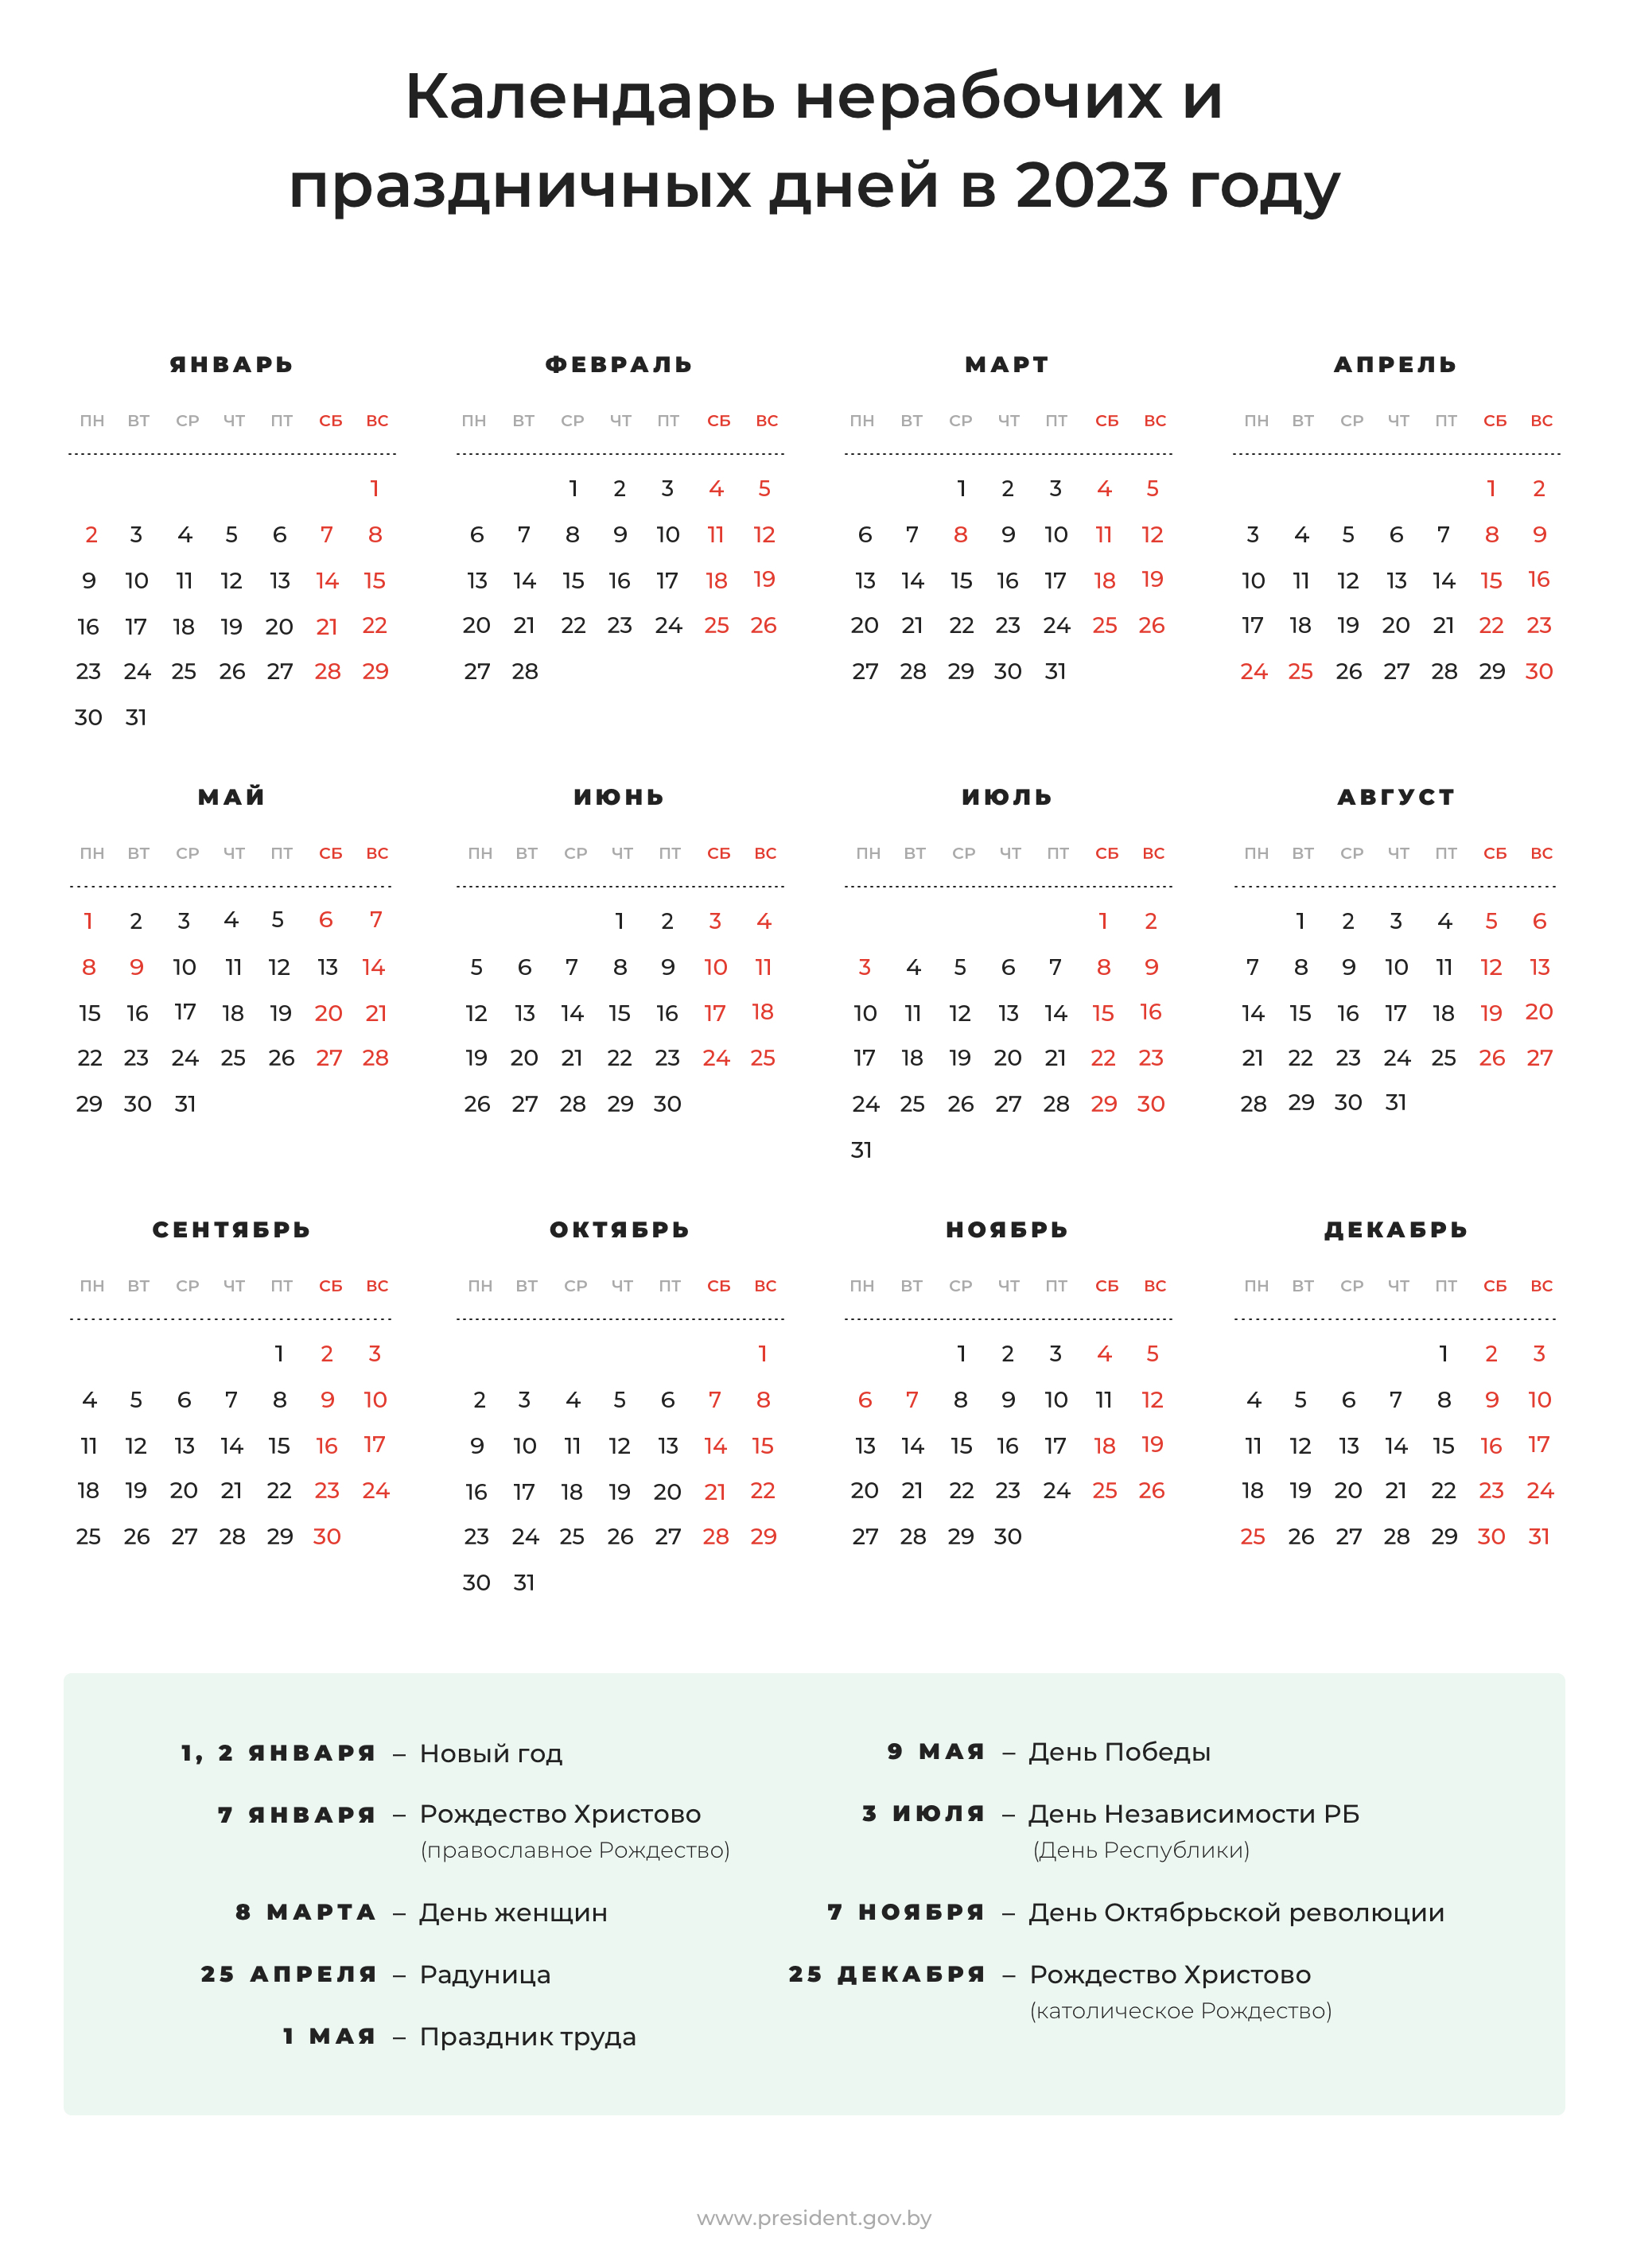 Календарь праздничных и нерабочих дней на 2023 год | Официальный  интернет-портал Президента Республики Беларусь